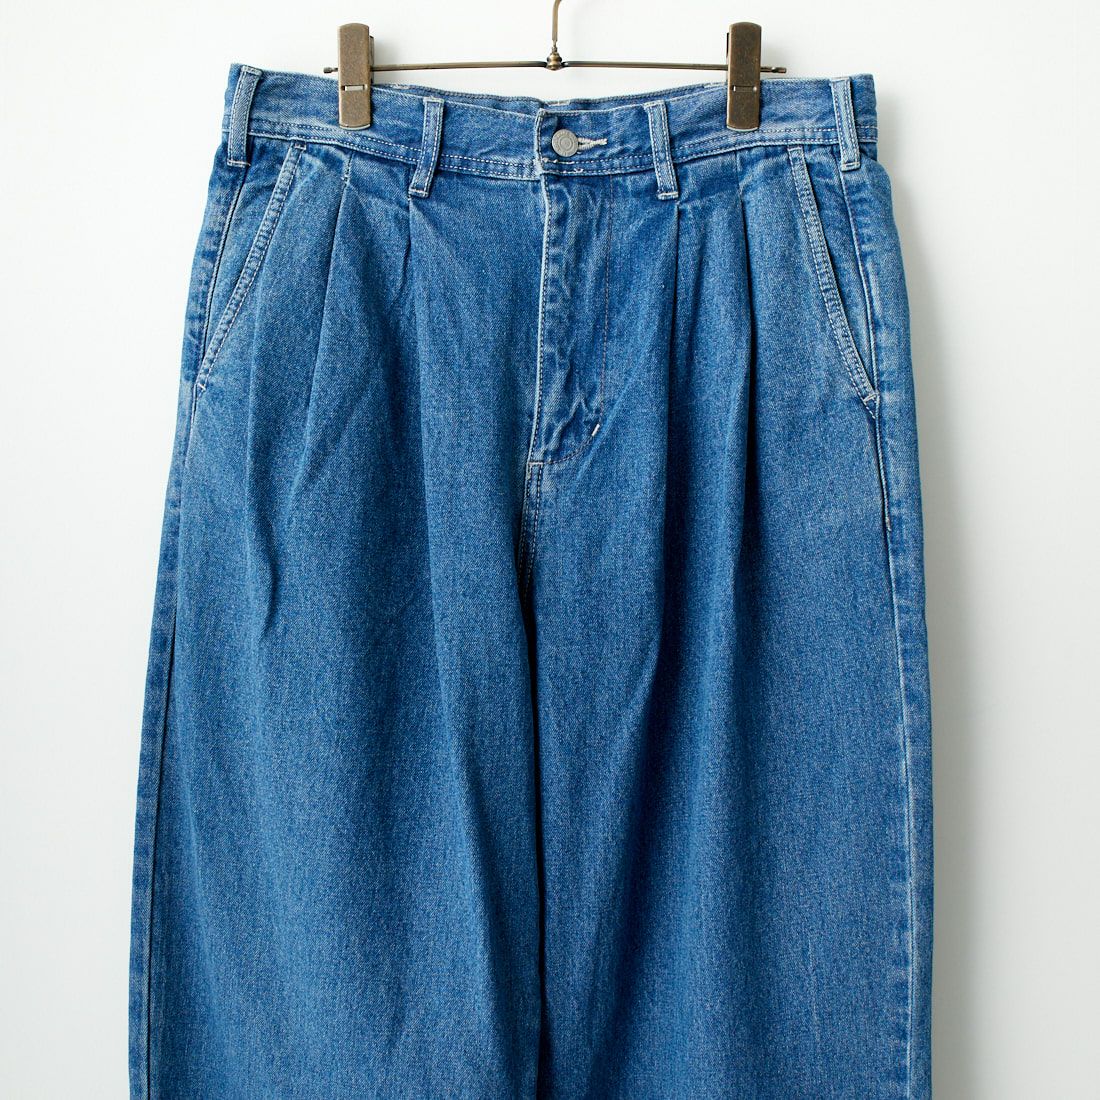 Jeans Factory Clothes [ジーンズファクトリークローズ] 2タックデニムワイドパンツ [JFC-224-052] USED